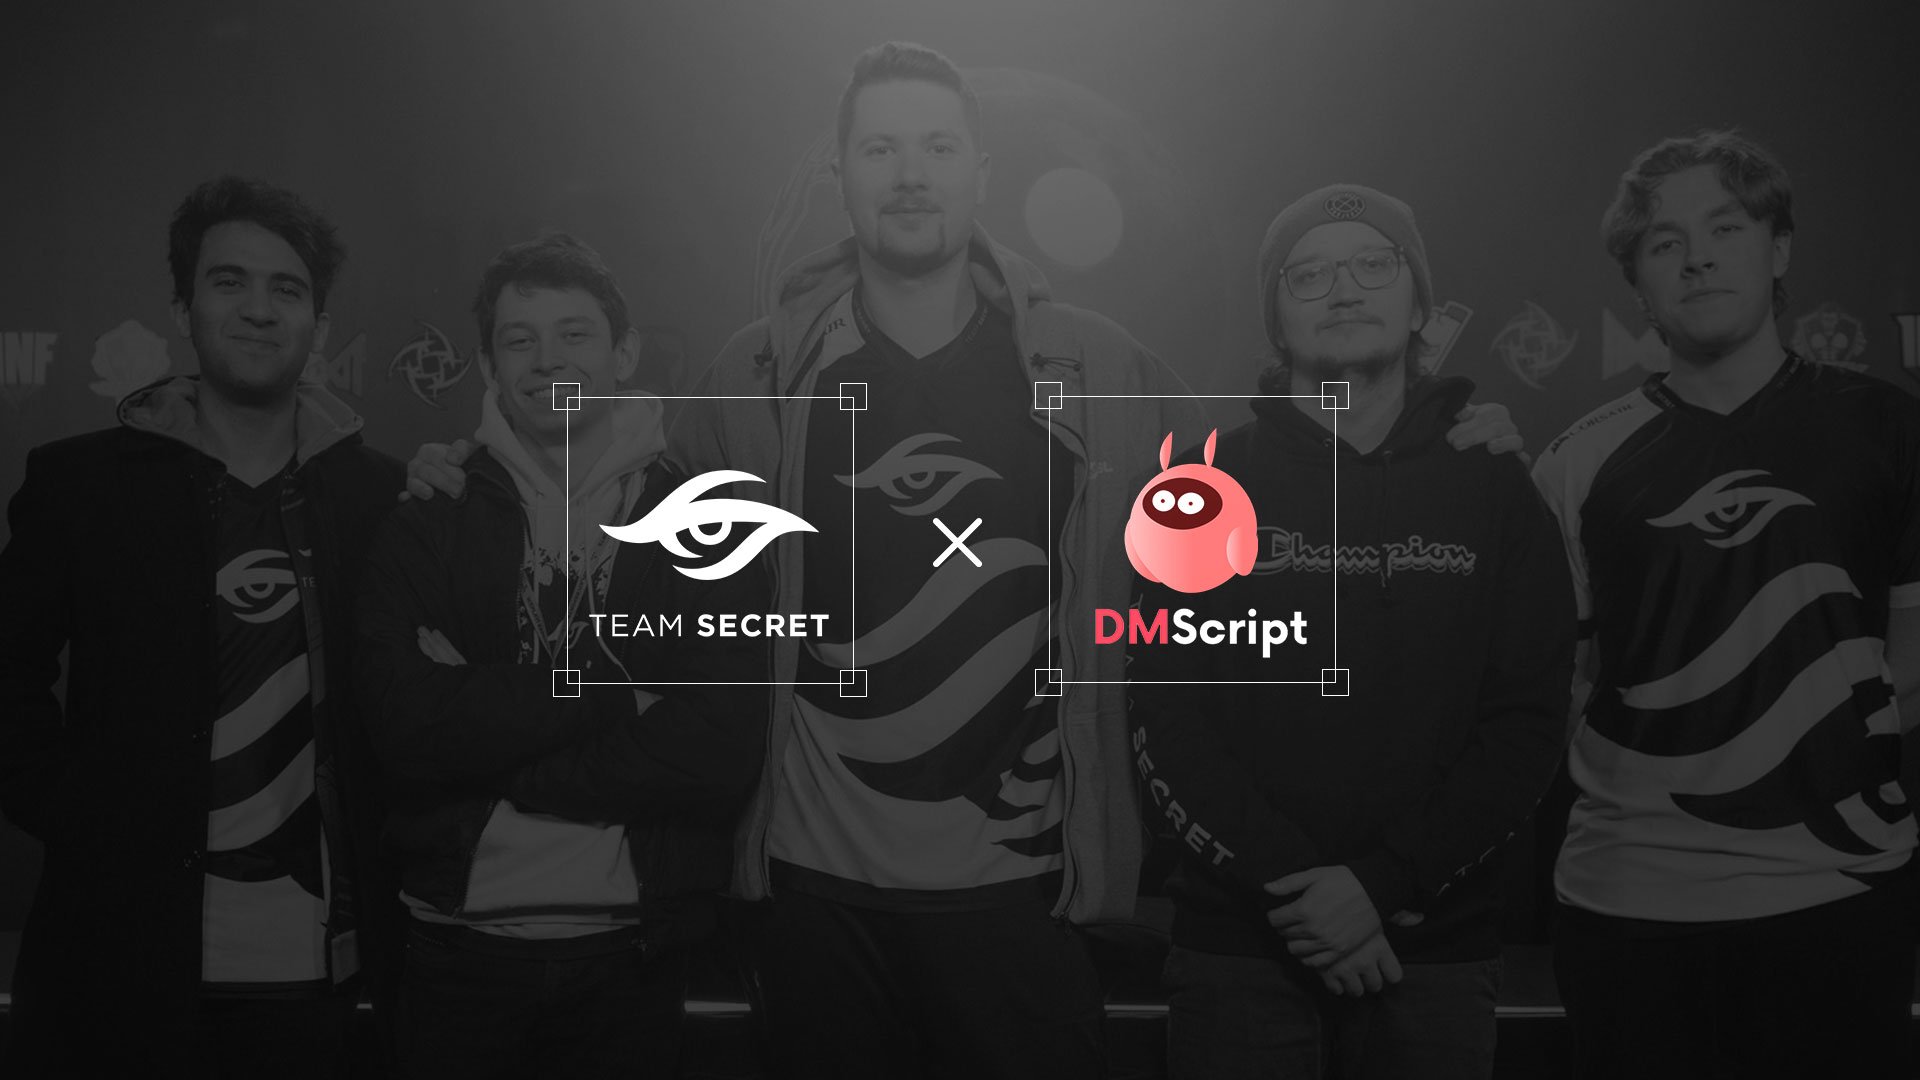 Team secret unveils dmscript partnership